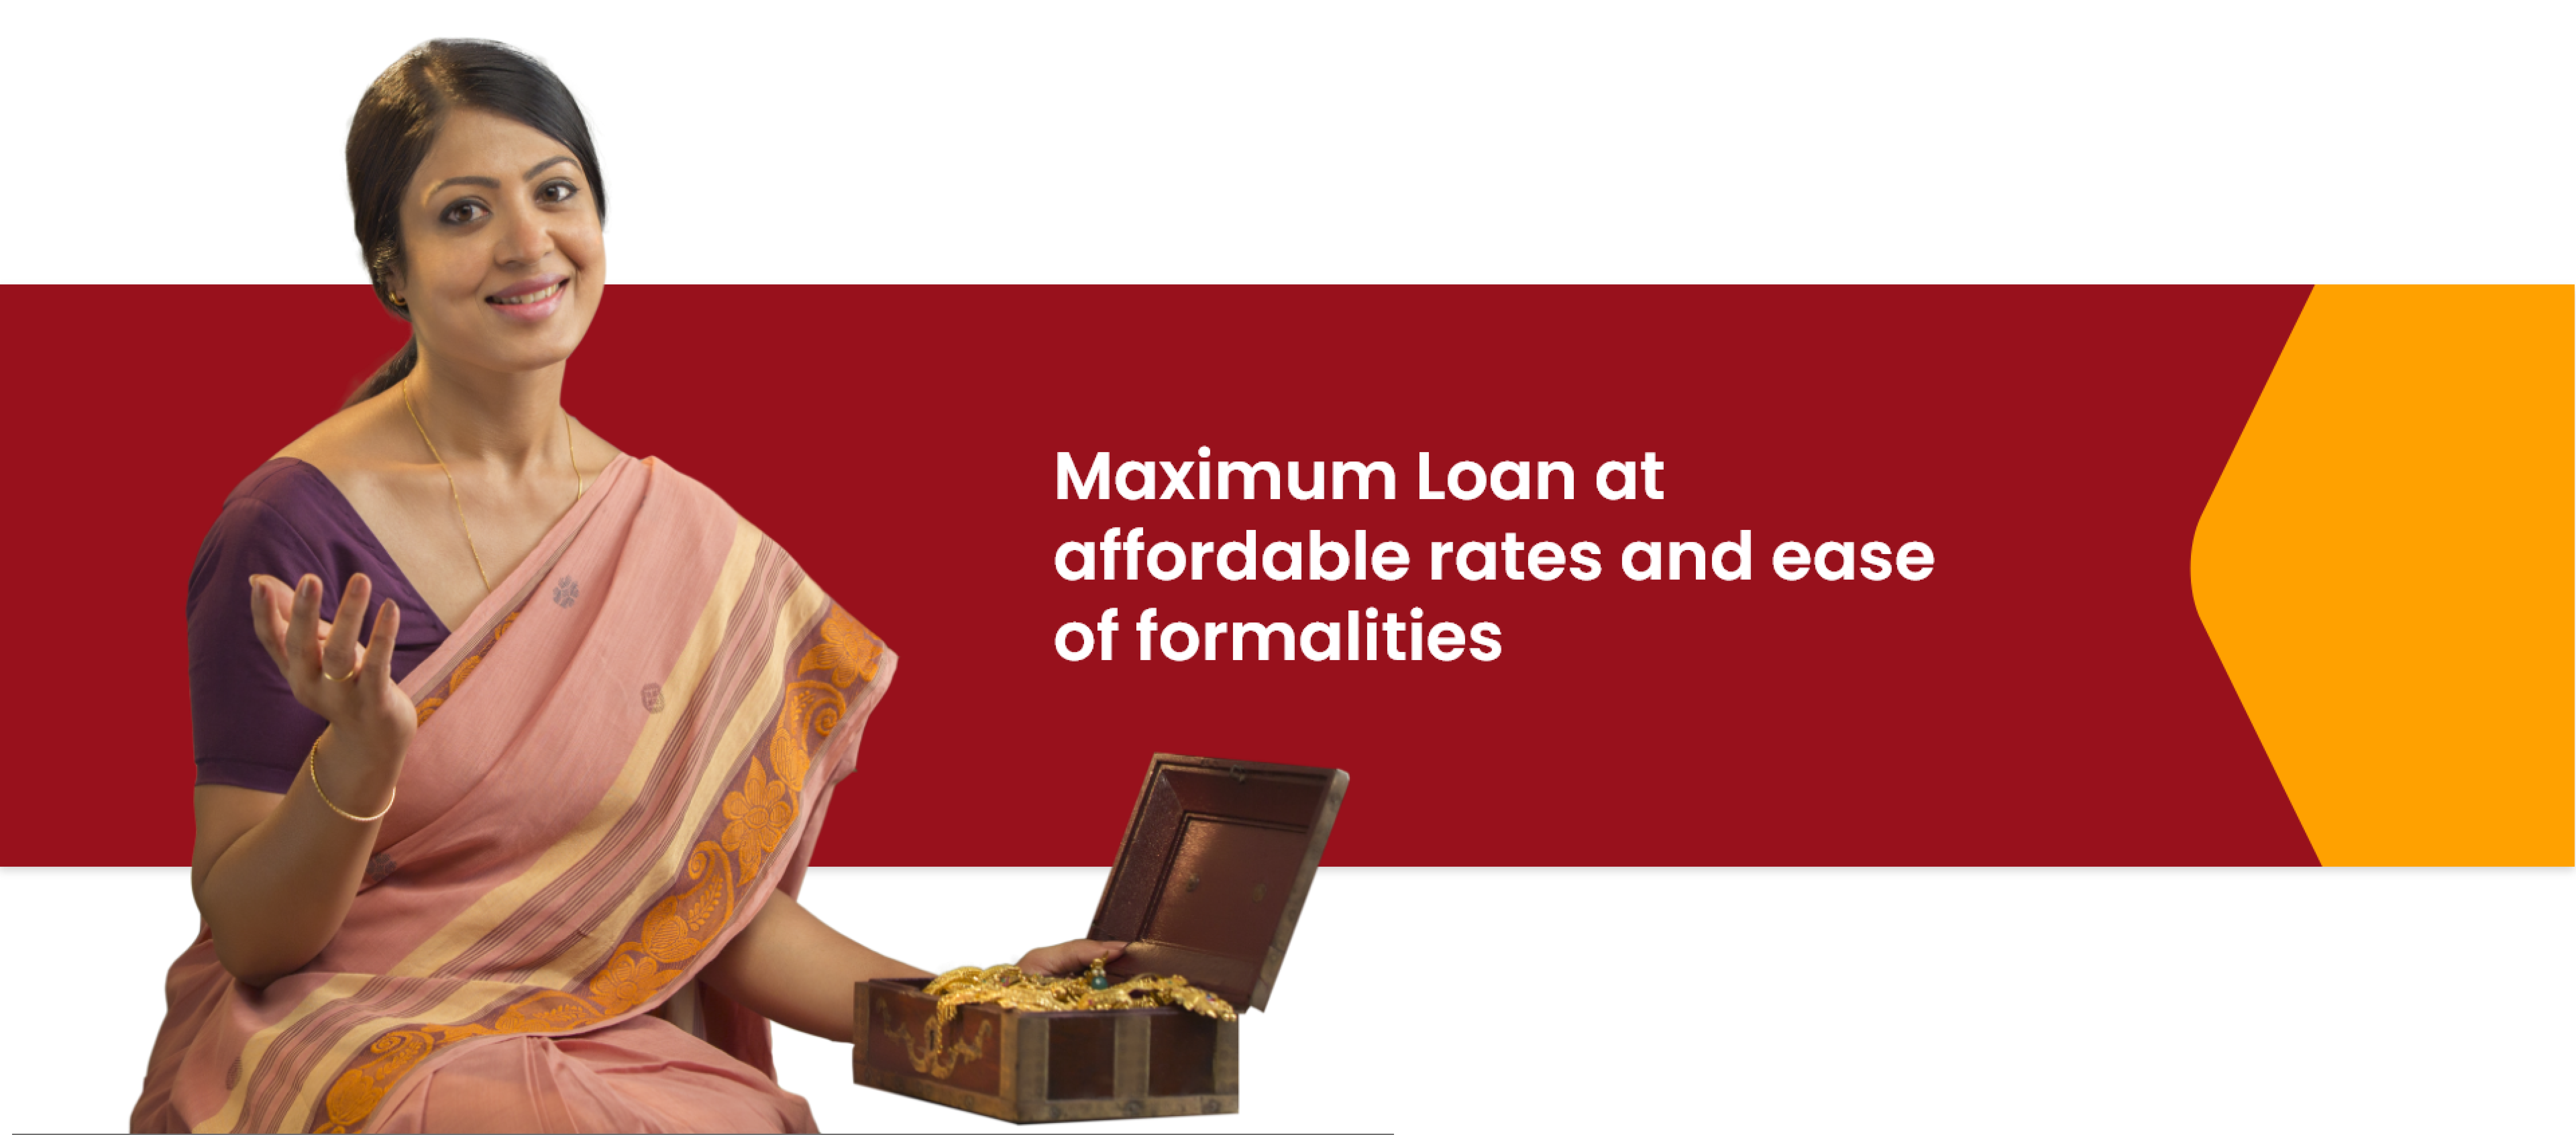 VM - Affordable loan